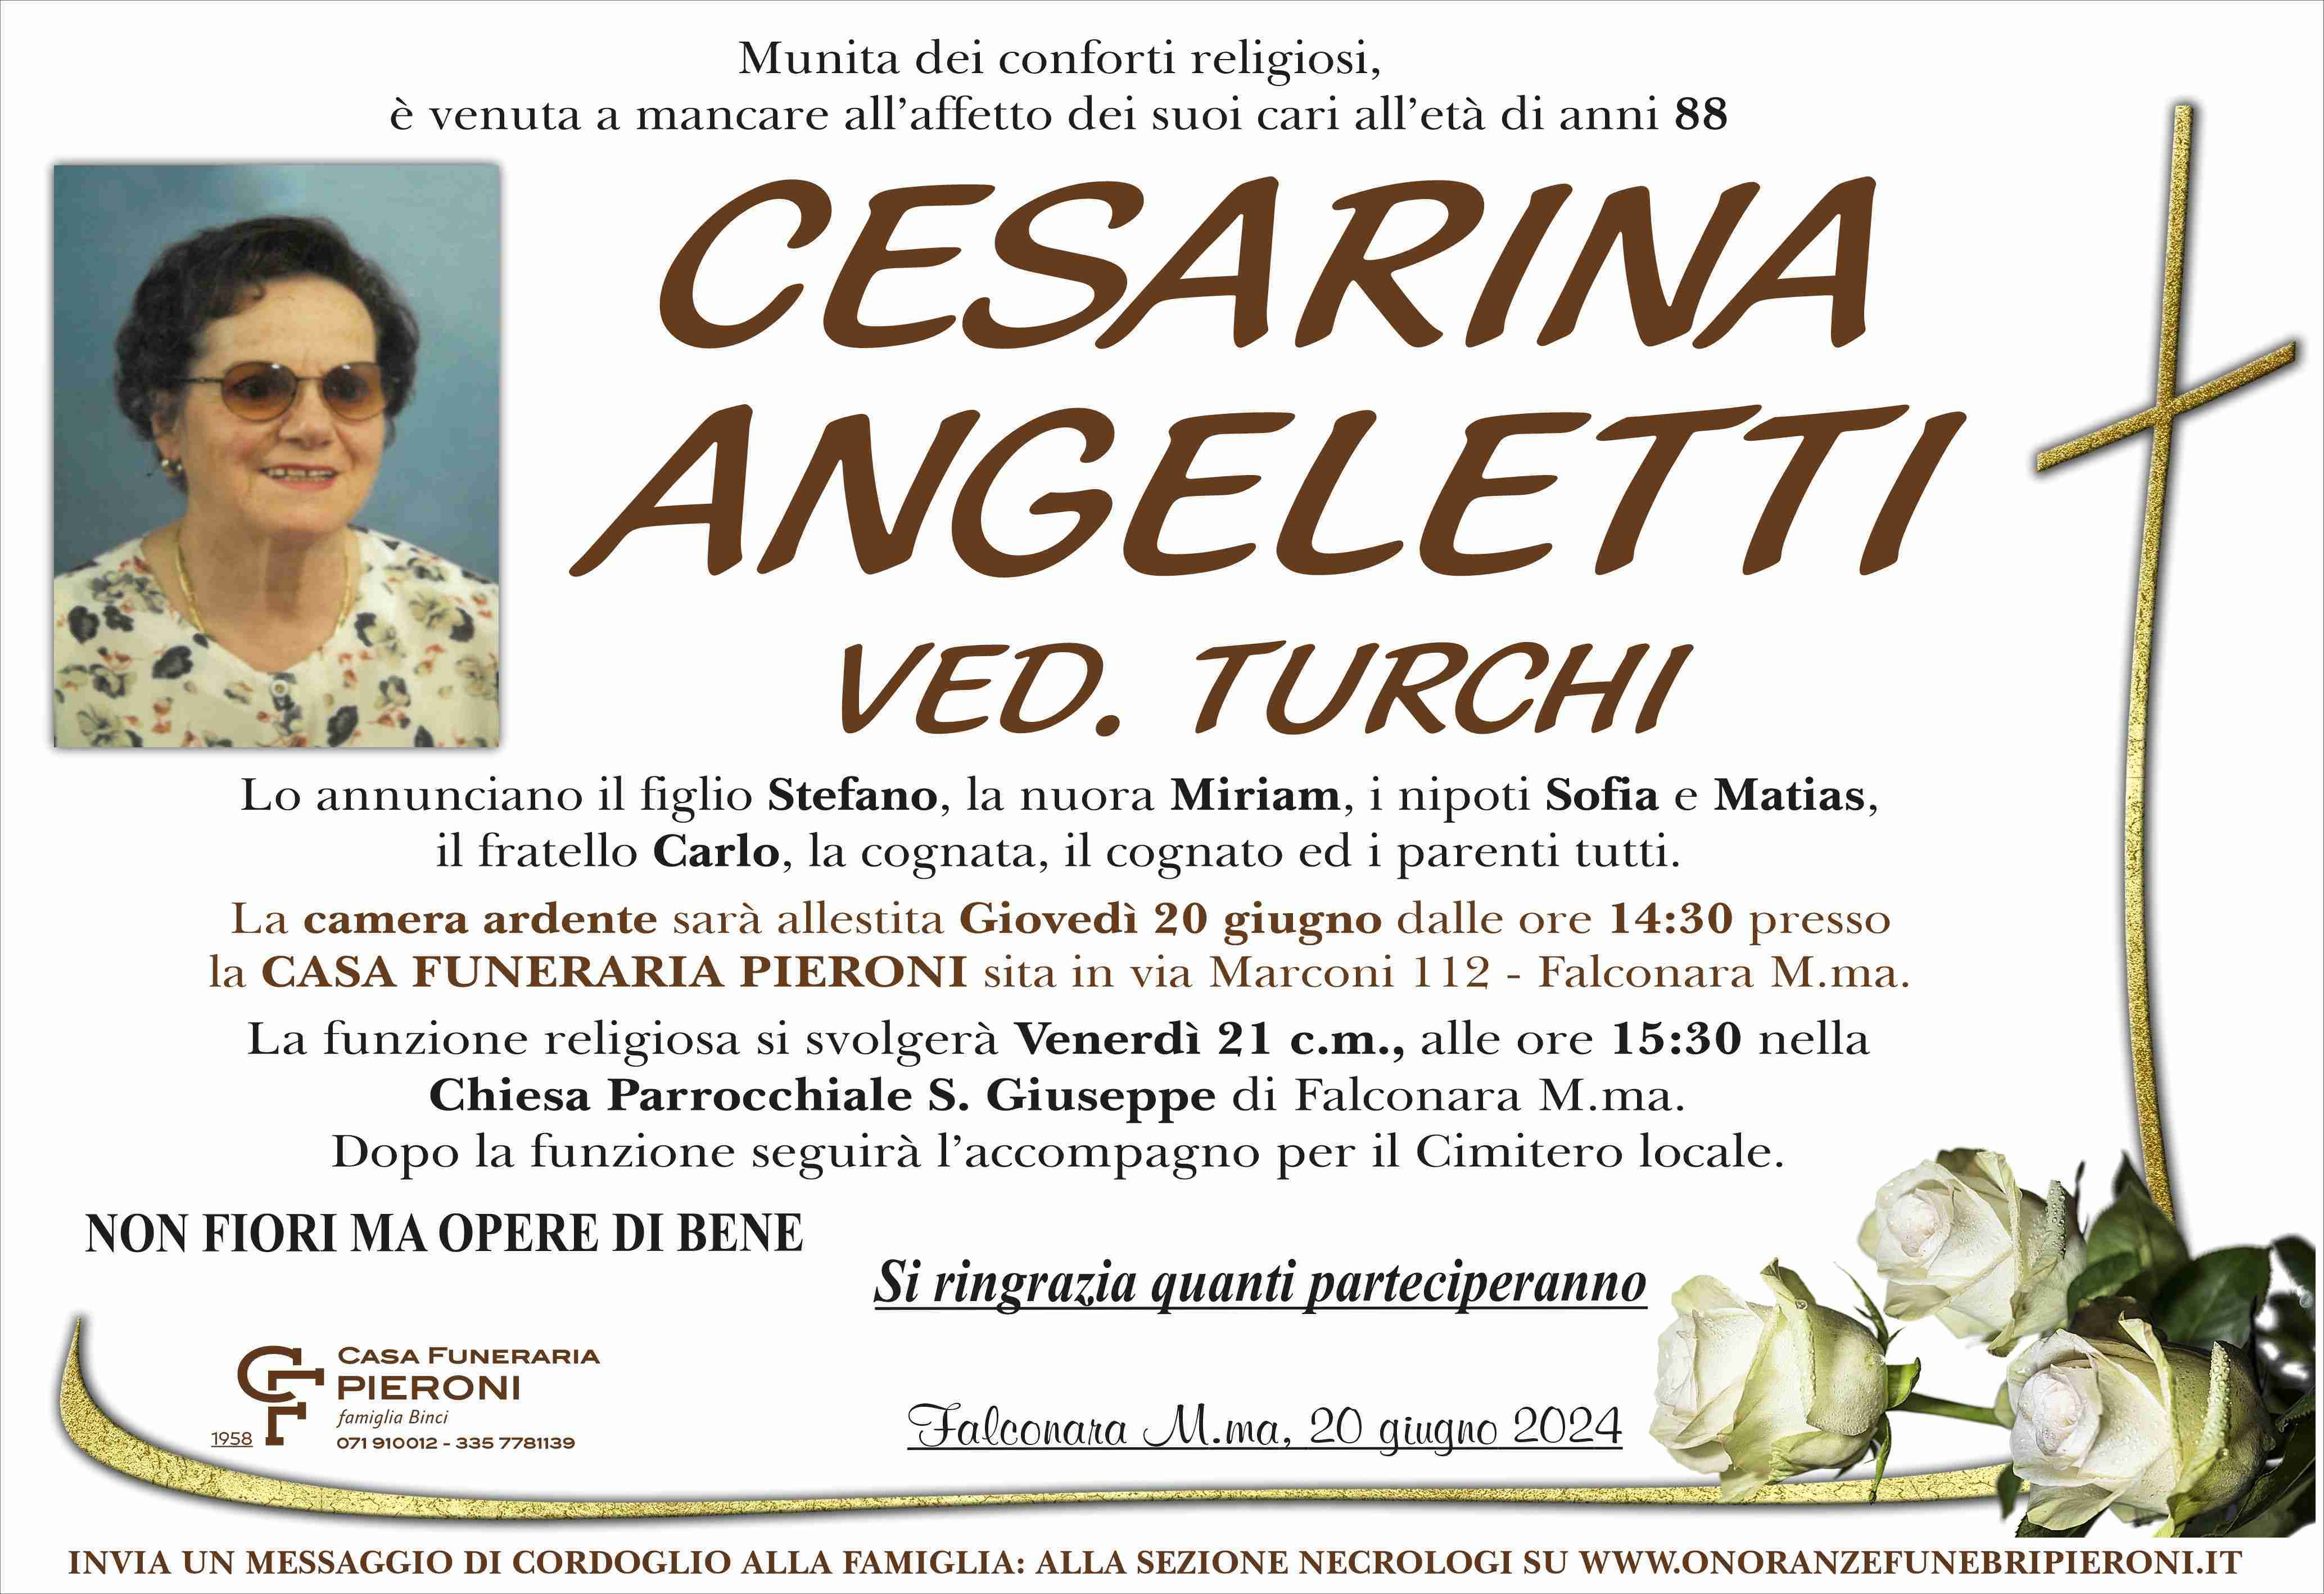 Cesarina Angeletti